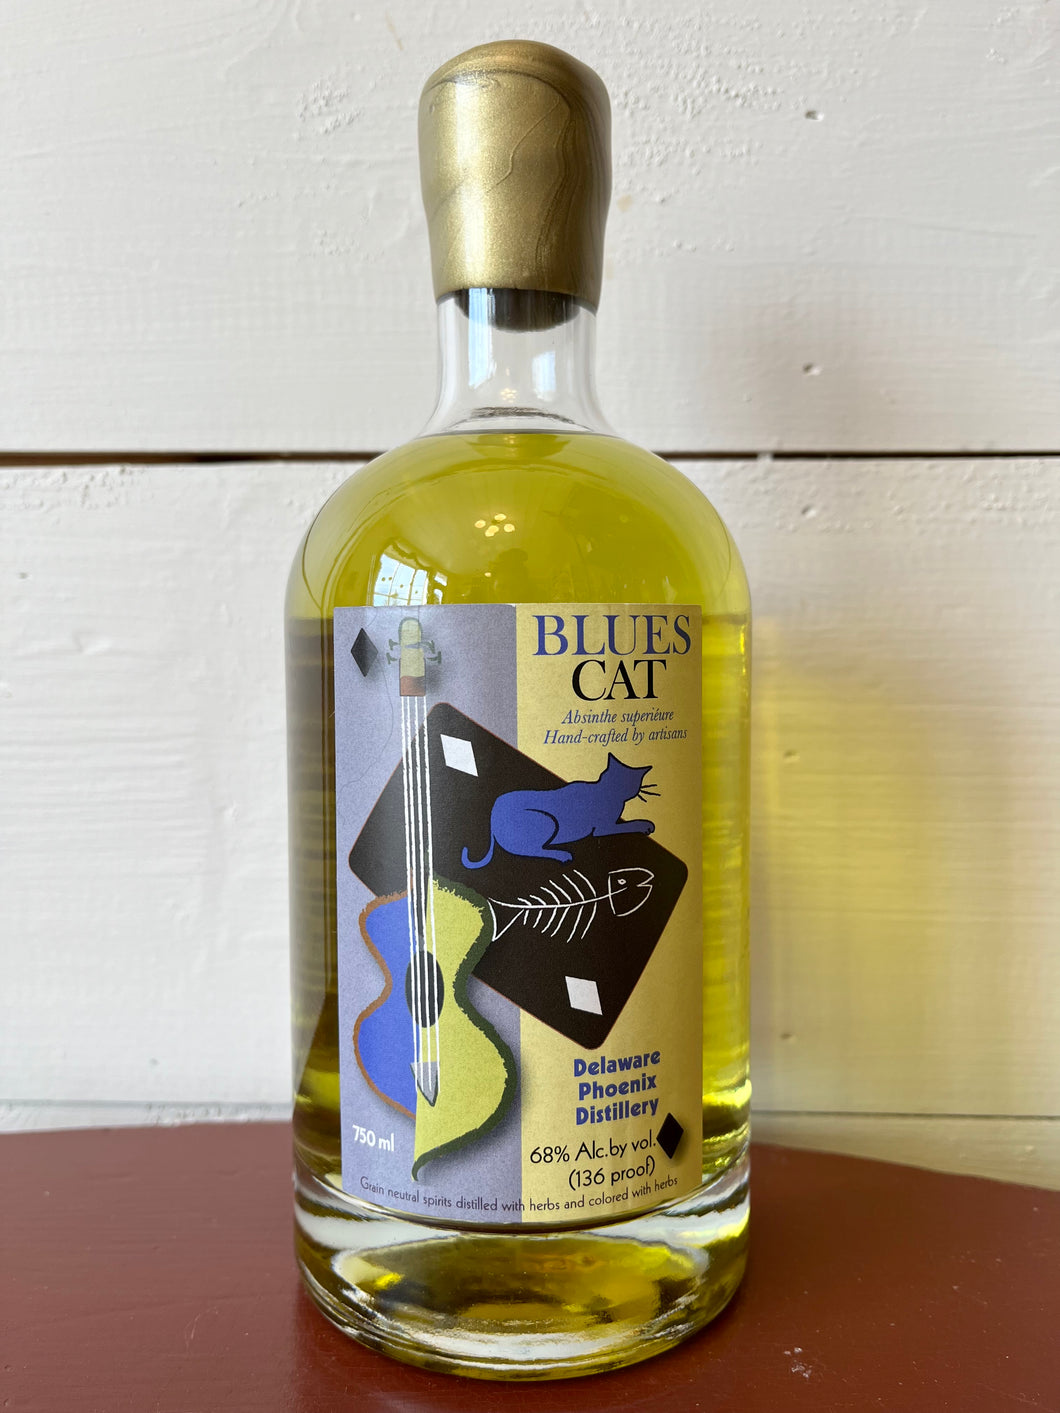 Delaware Phoenix Distillery, 'Blues Cat' Absinthe